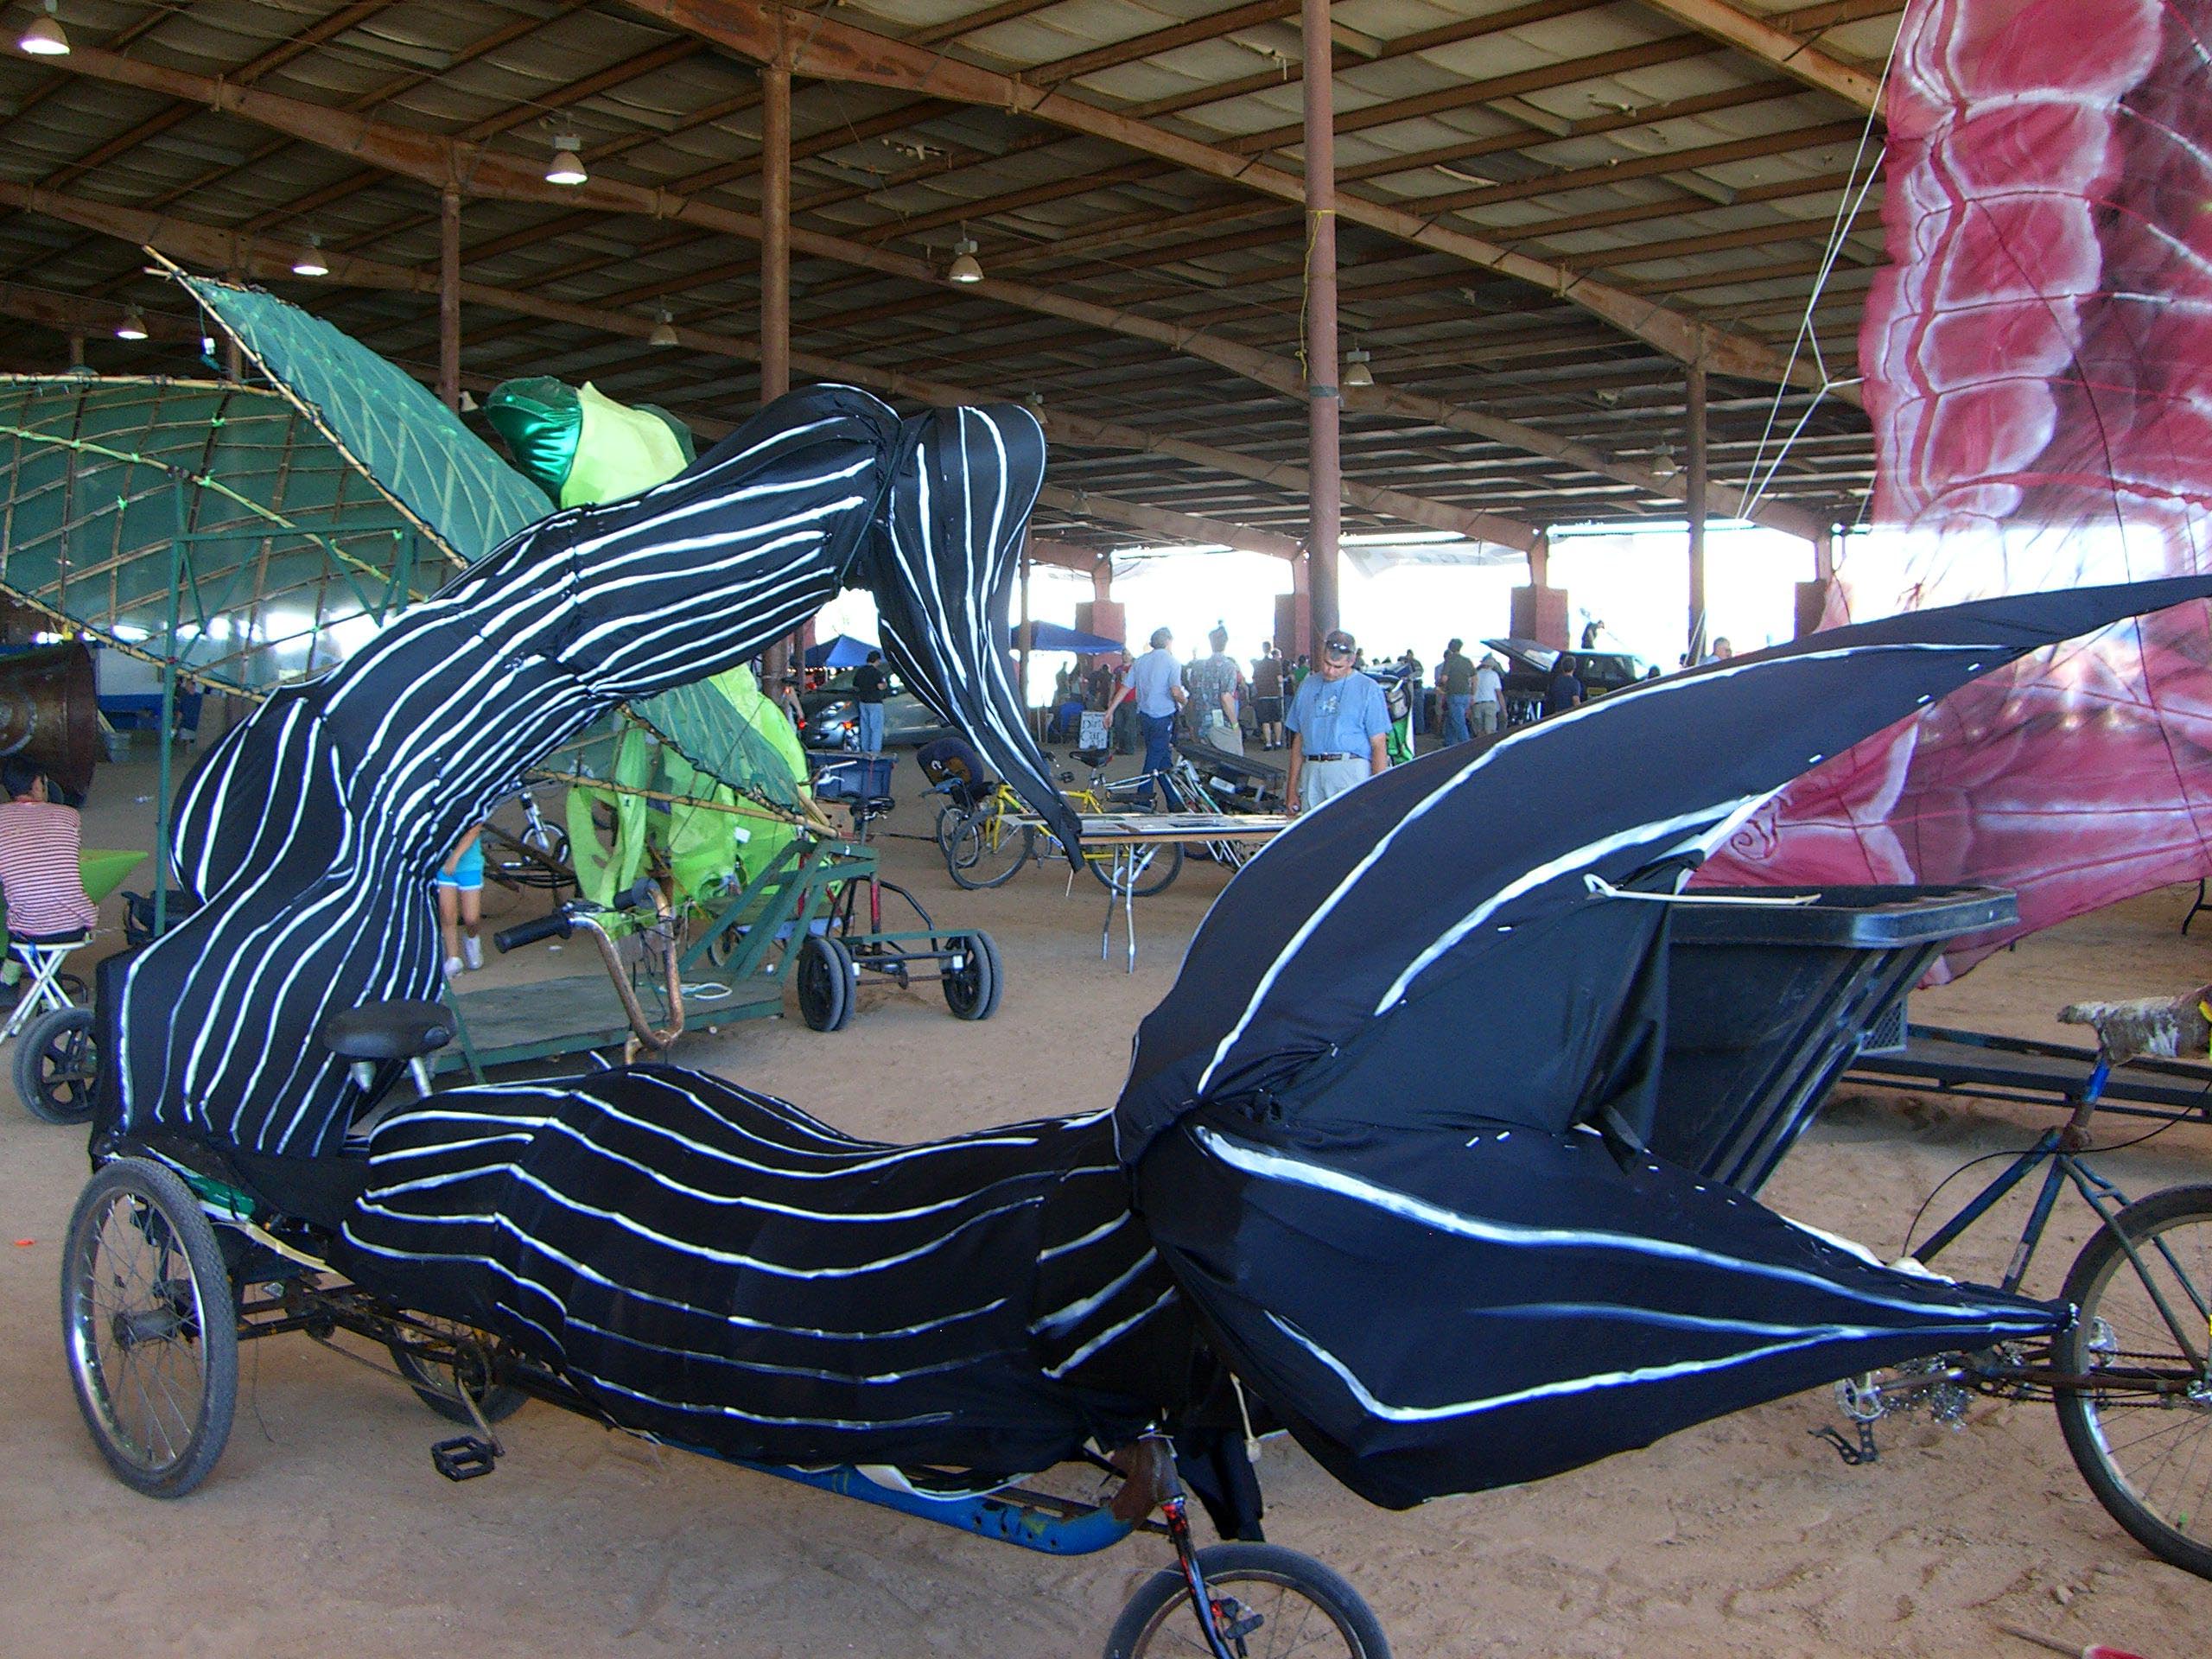 A fishtail bike at Maker Faire 2007